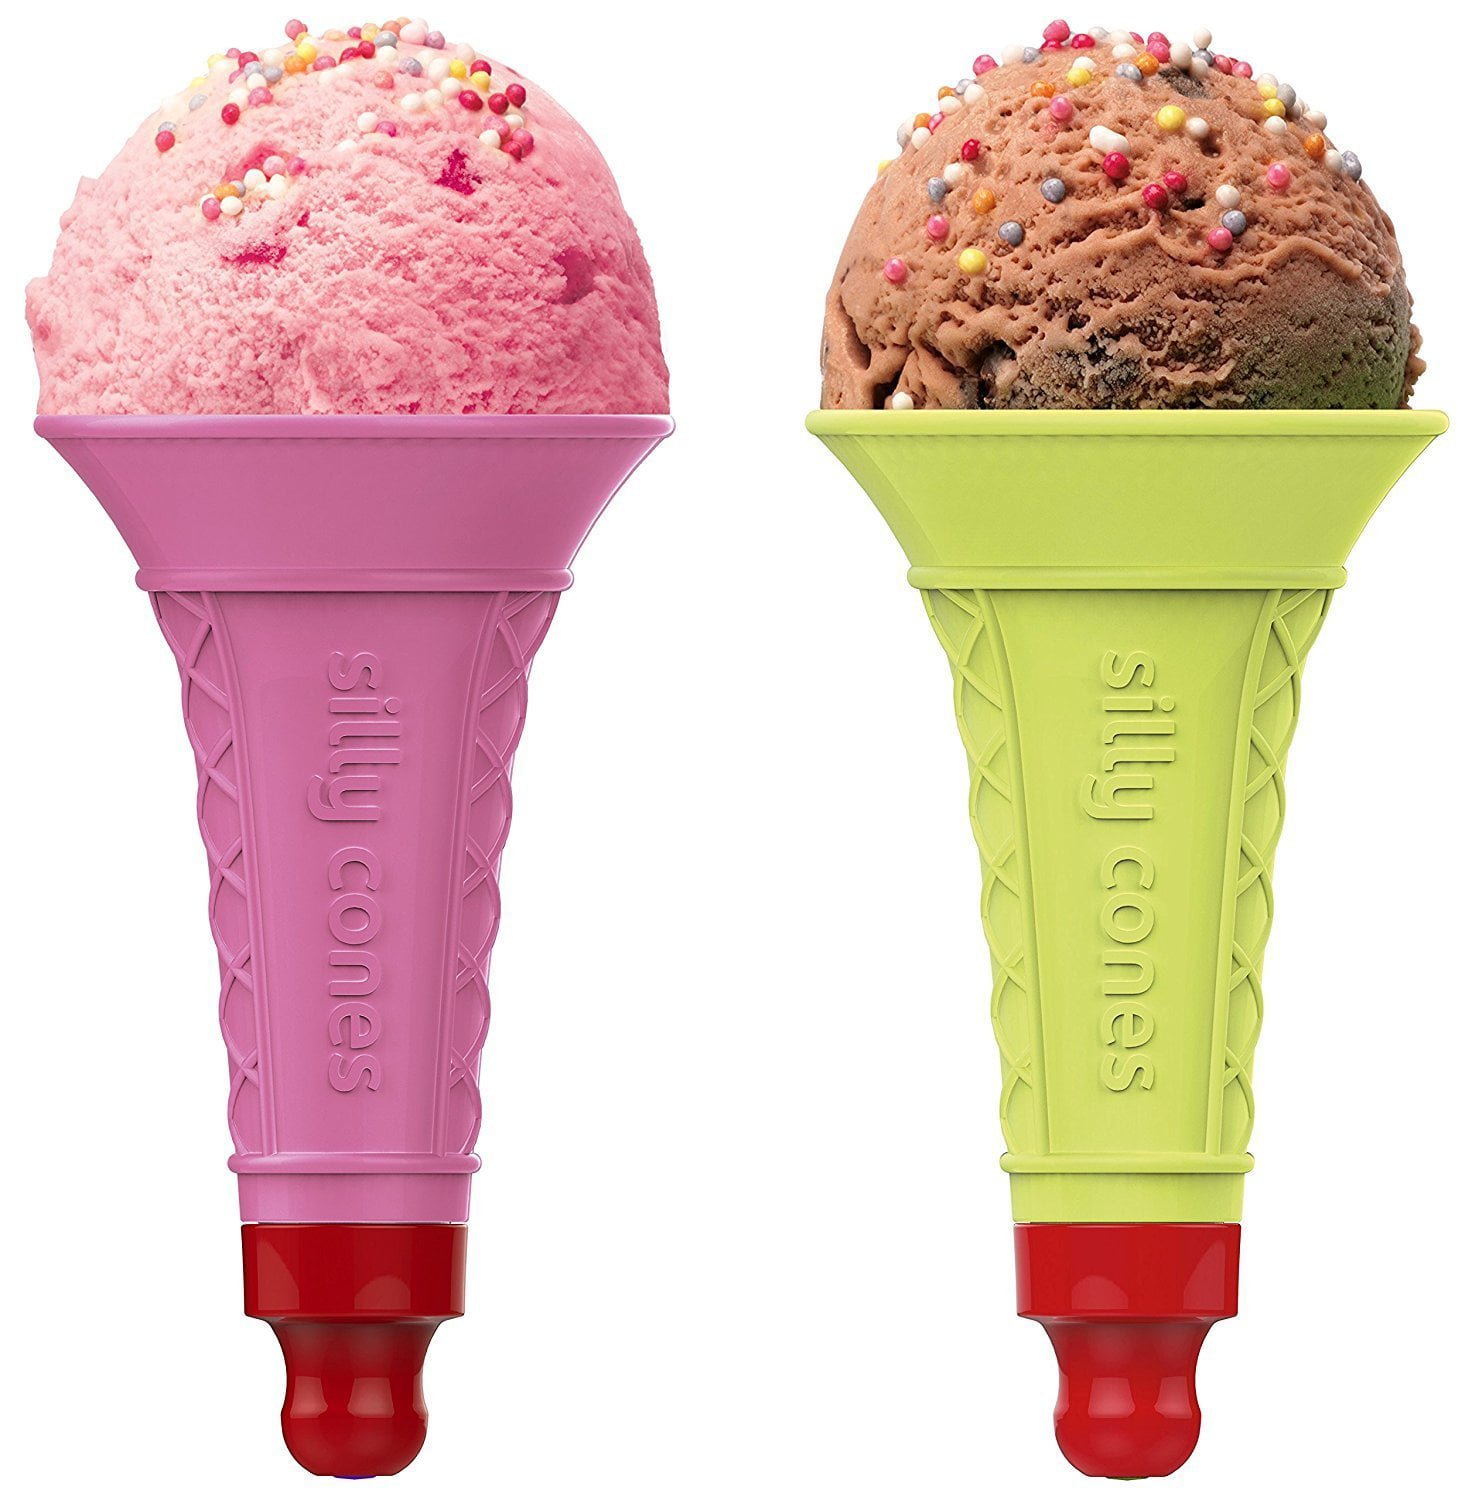 Plastic Ice Cream Cones, Frozen Yogurt Cone Cups, Pack of